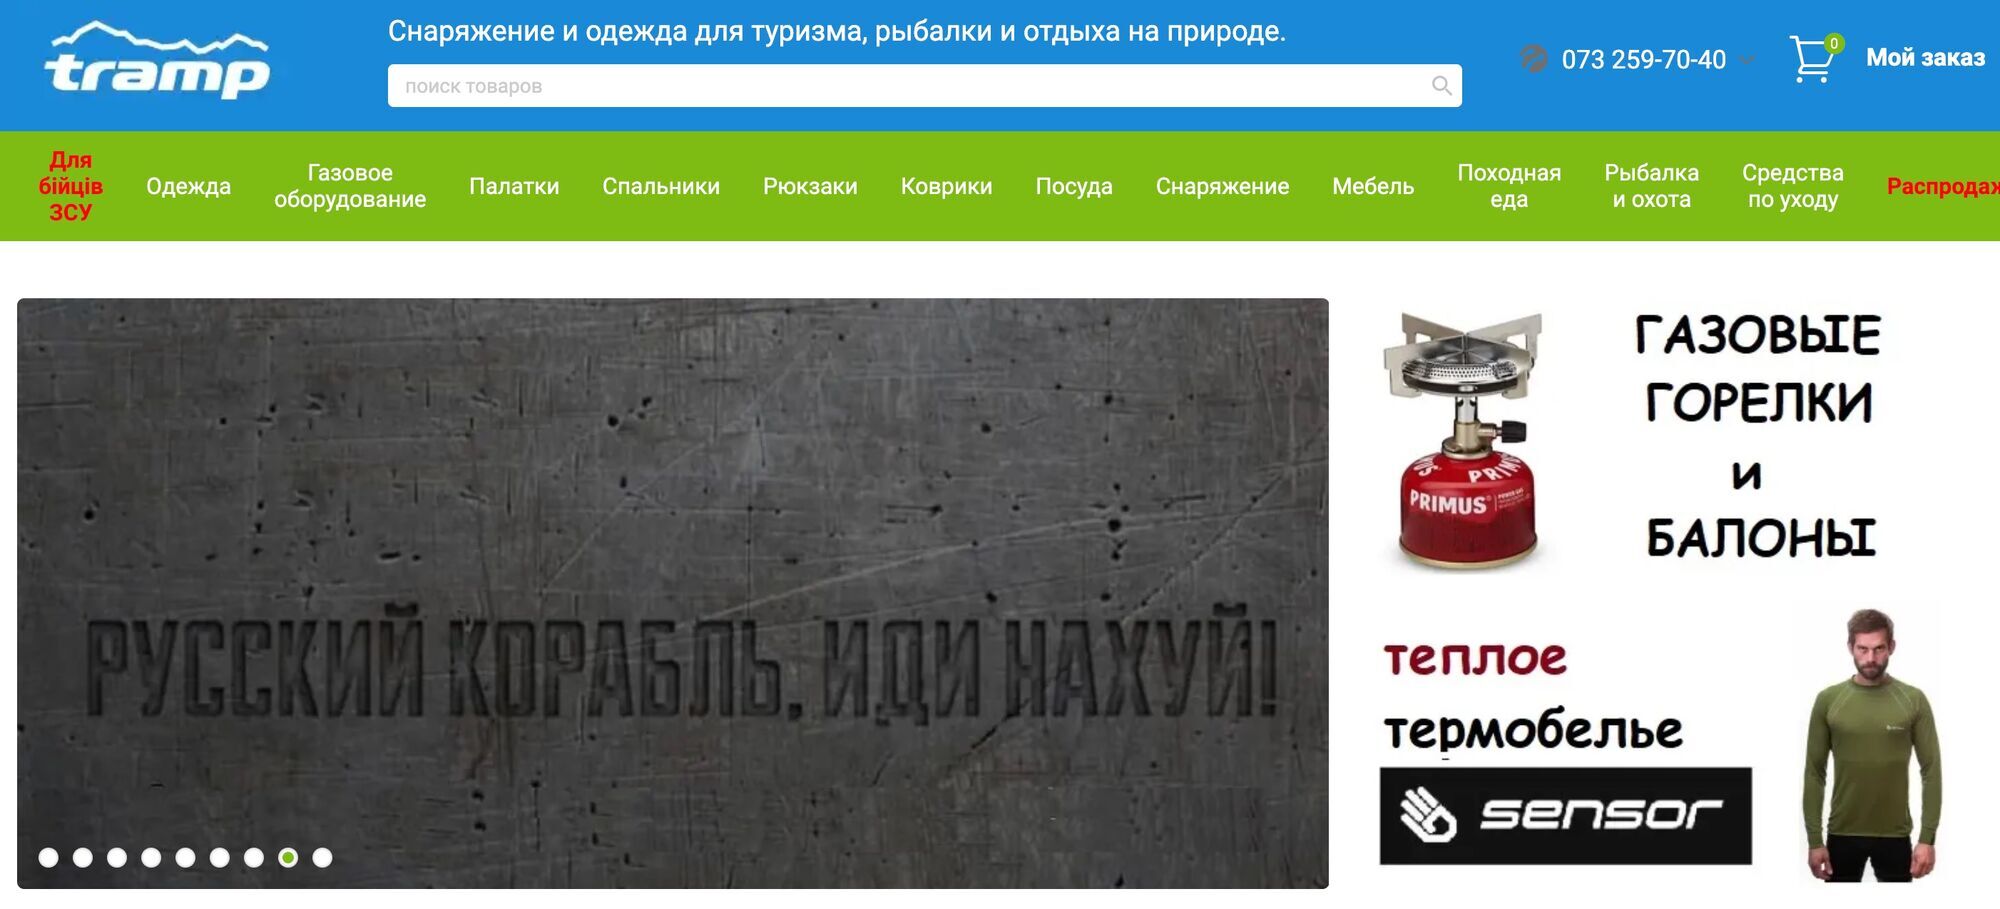 Інтернет-магазин tramp.in.ua пропонує знижки на купівлю продукції для ЗСУ